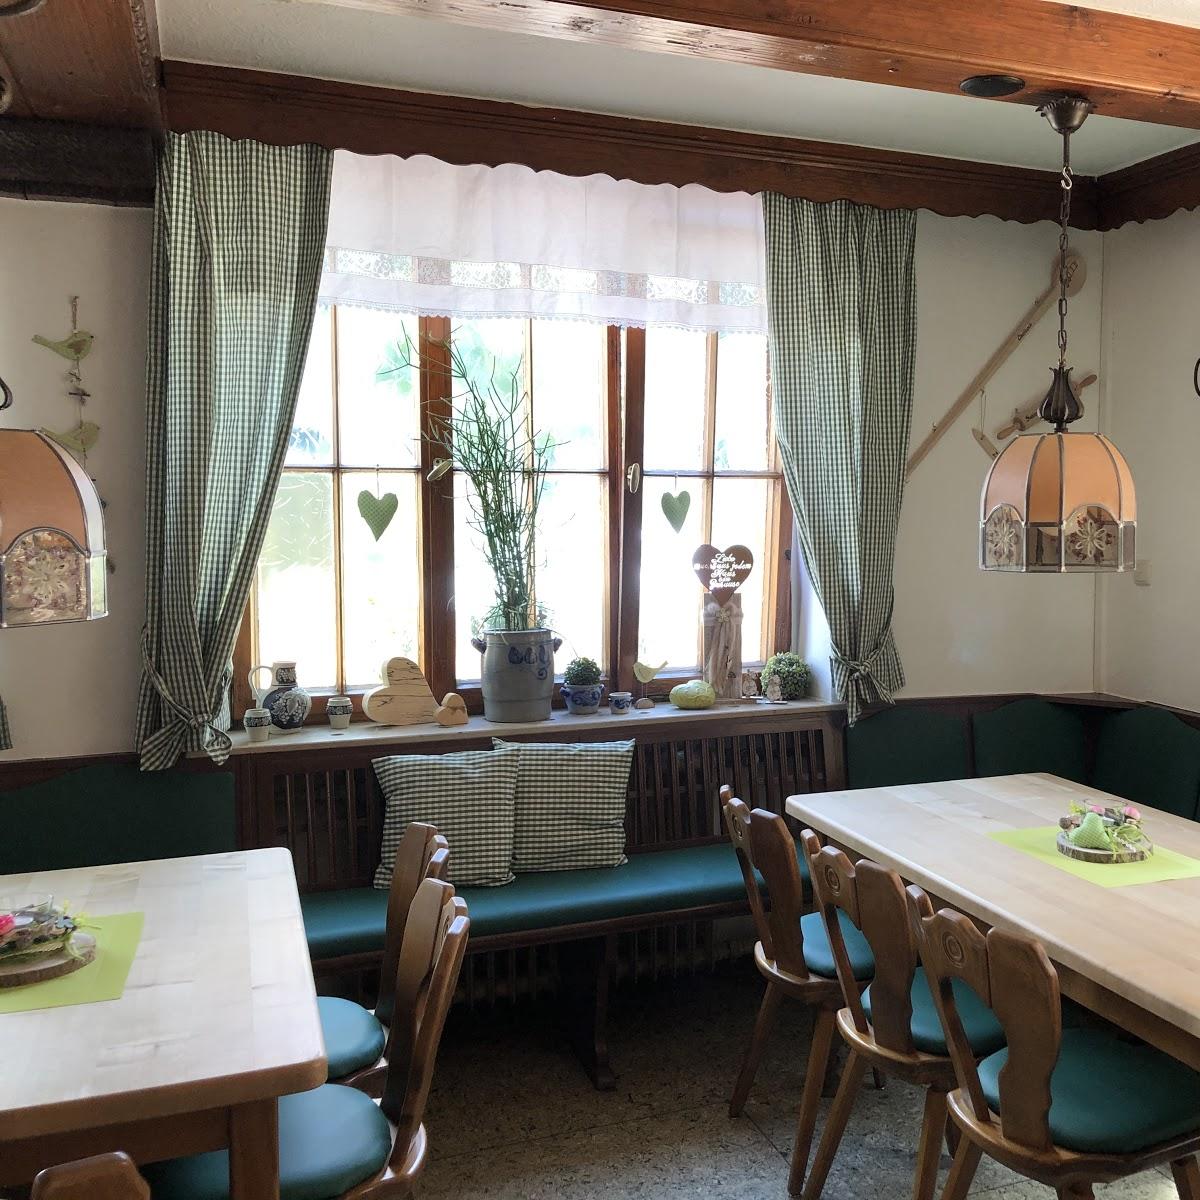 Restaurant "Gasthaus zum Lamm" in  Ebensfeld